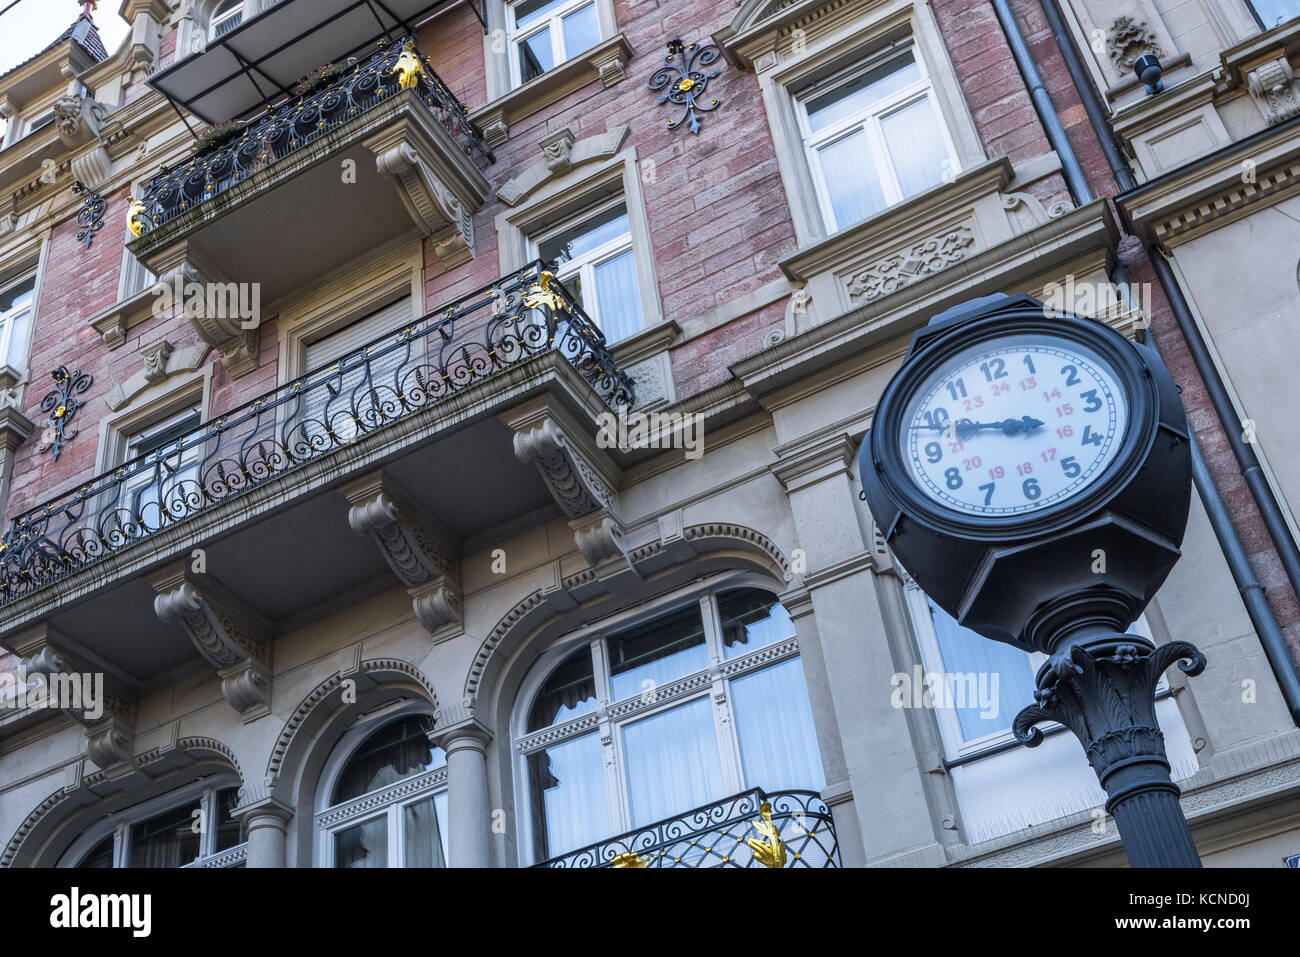 Reloj típico de la calle en la ciudad balneario Baden-Baden, Baden-Wuerttemberg, las afueras de la Selva Negra, Alemania Foto de stock